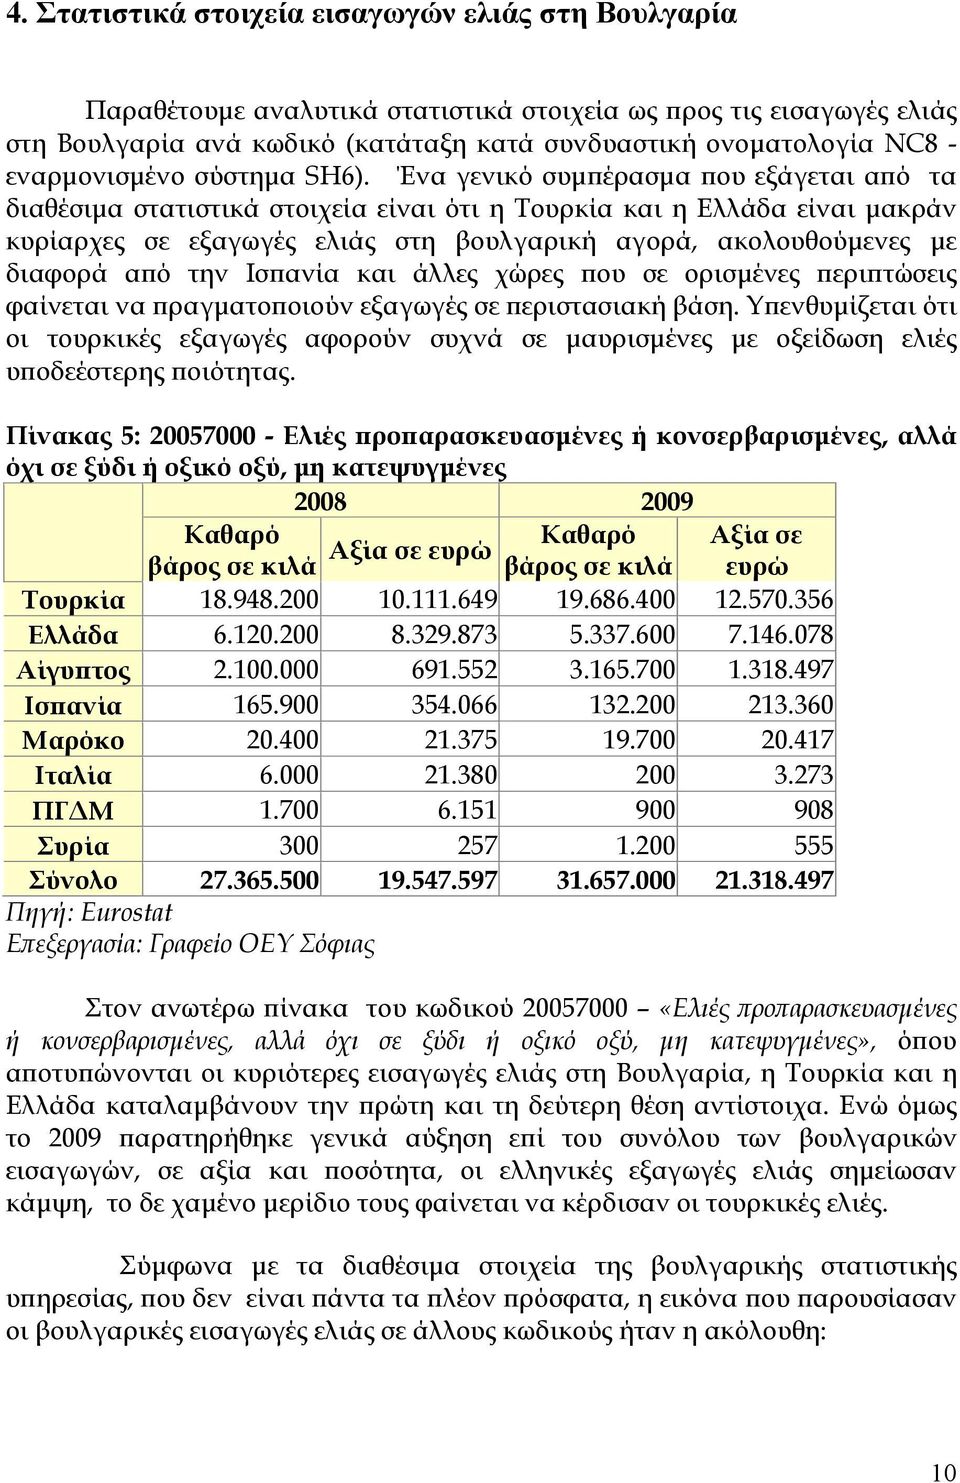 Ένα γενικό συμπέρασμα που εξάγεται από τα διαθέσιμα στατιστικά στοιχεία είναι ότι η Τουρκία και η Ελλάδα είναι μακράν κυρίαρχες εξαγωγές ελιάς στη βουλγαρική αγορά, ακολουθούμενες με διαφορά από την